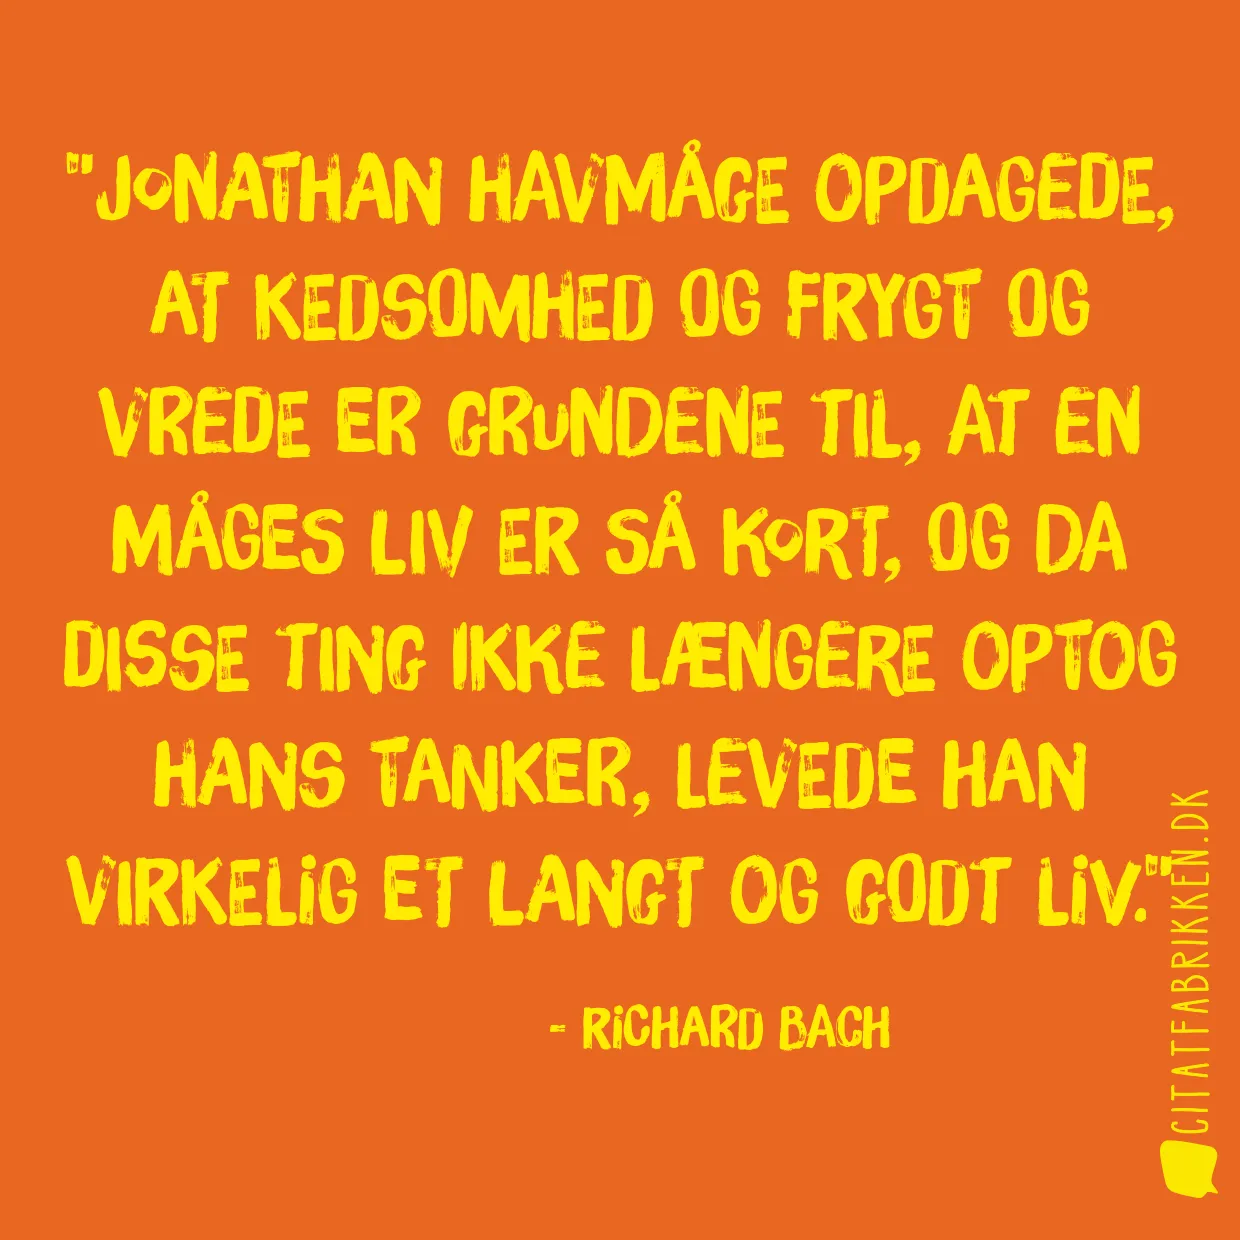 Jonathan Havmåge opdagede, at kedsomhed og frygt og vrede er grundene til, at en måges liv er så kort, og da disse ting ikke længere optog hans tanker, levede han virkelig et langt og godt liv.